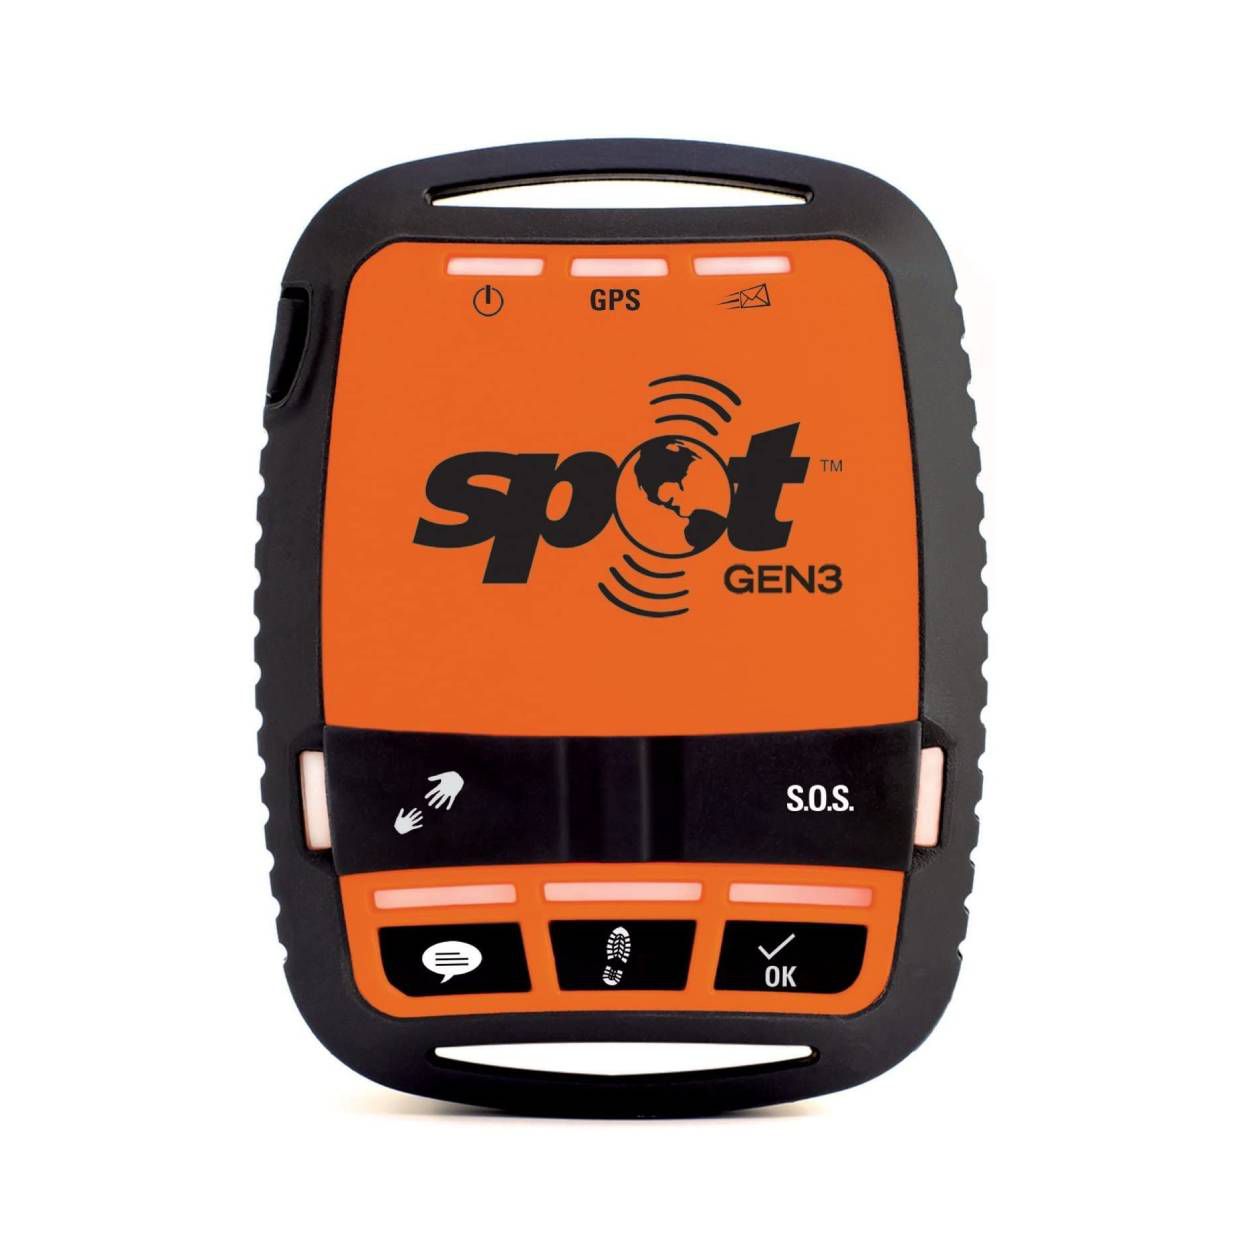 spot-gen3-gps-tracker-device